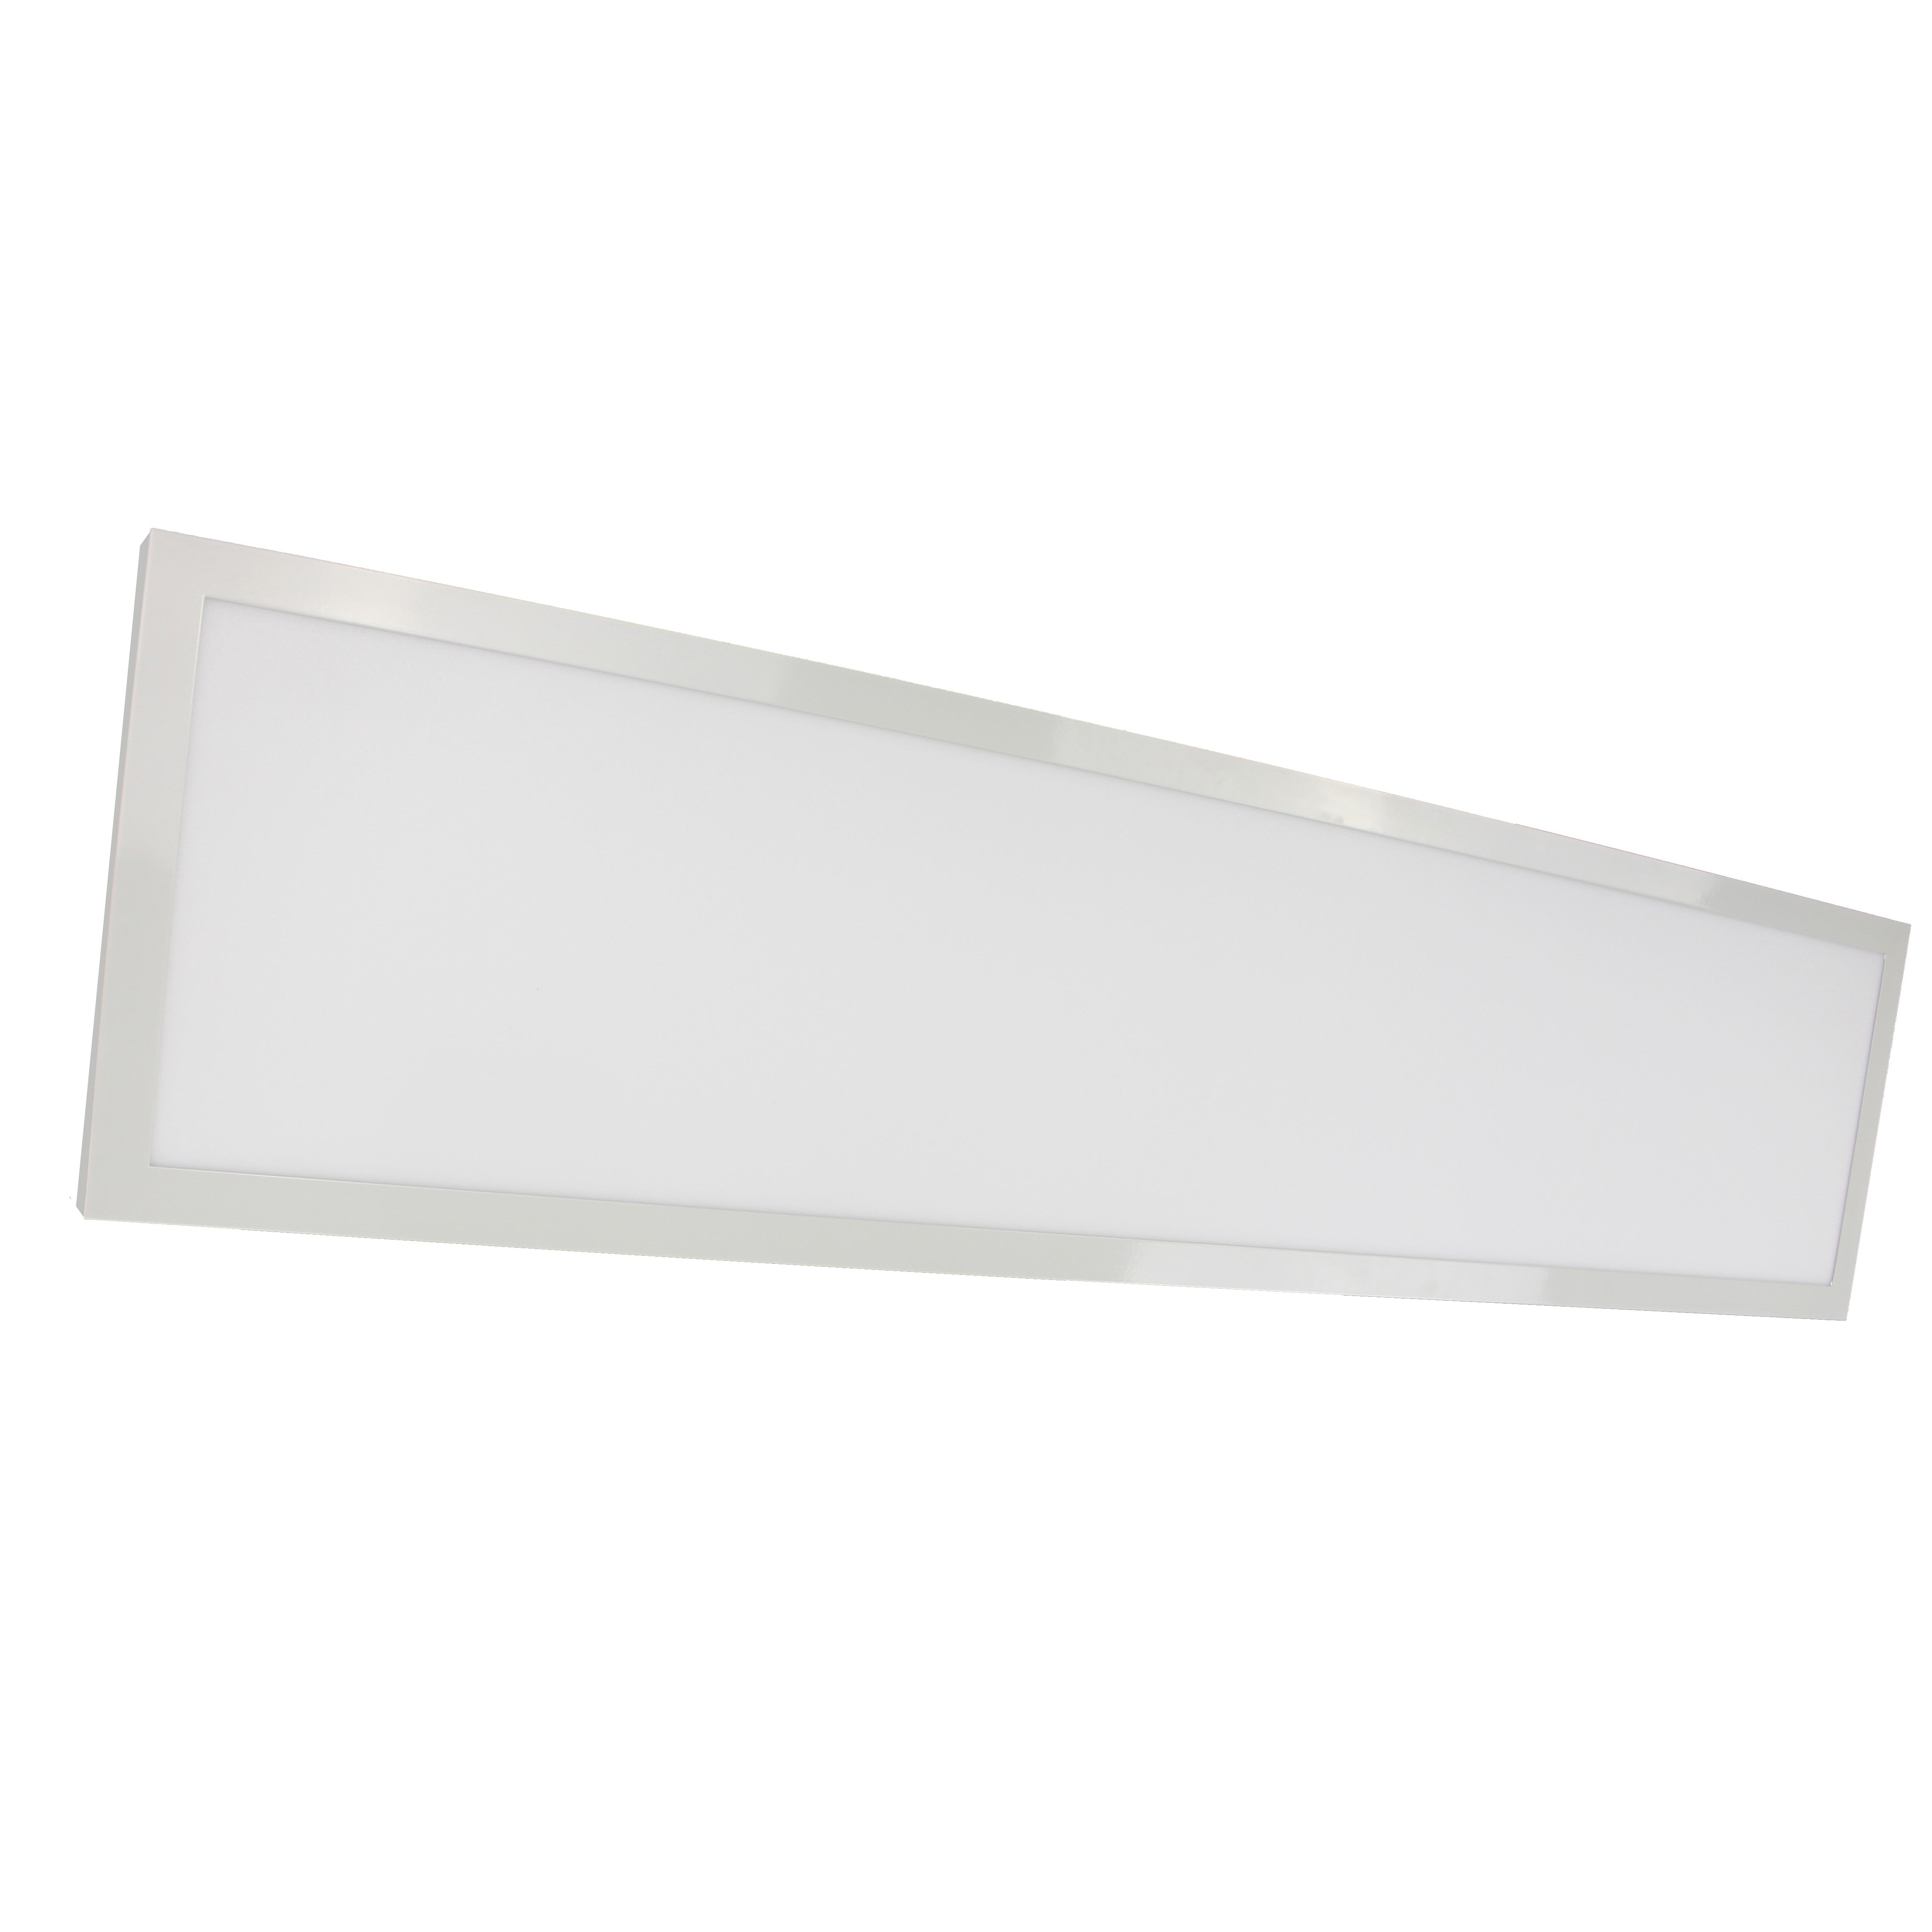 45W 12" x 48" Surface Mount LED Fixture 3000K White Finish 120/277V